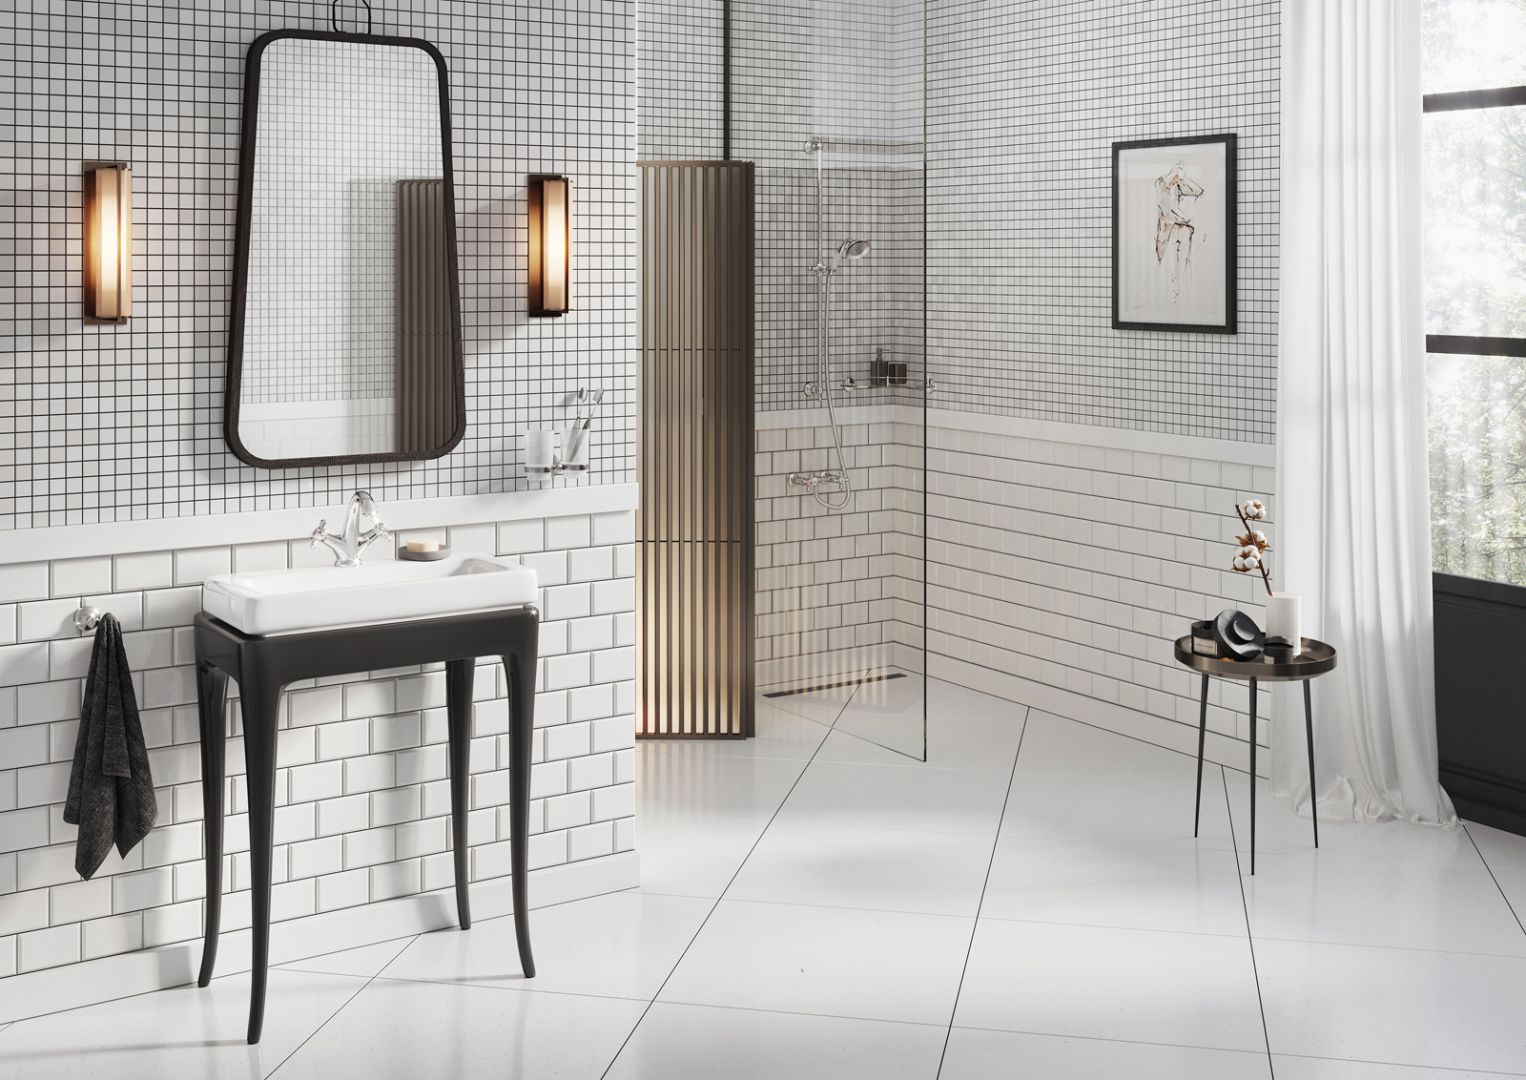 Aranżacja łazienki w stylu retro - inspiracja firmy Ferro. Fot. Ferro